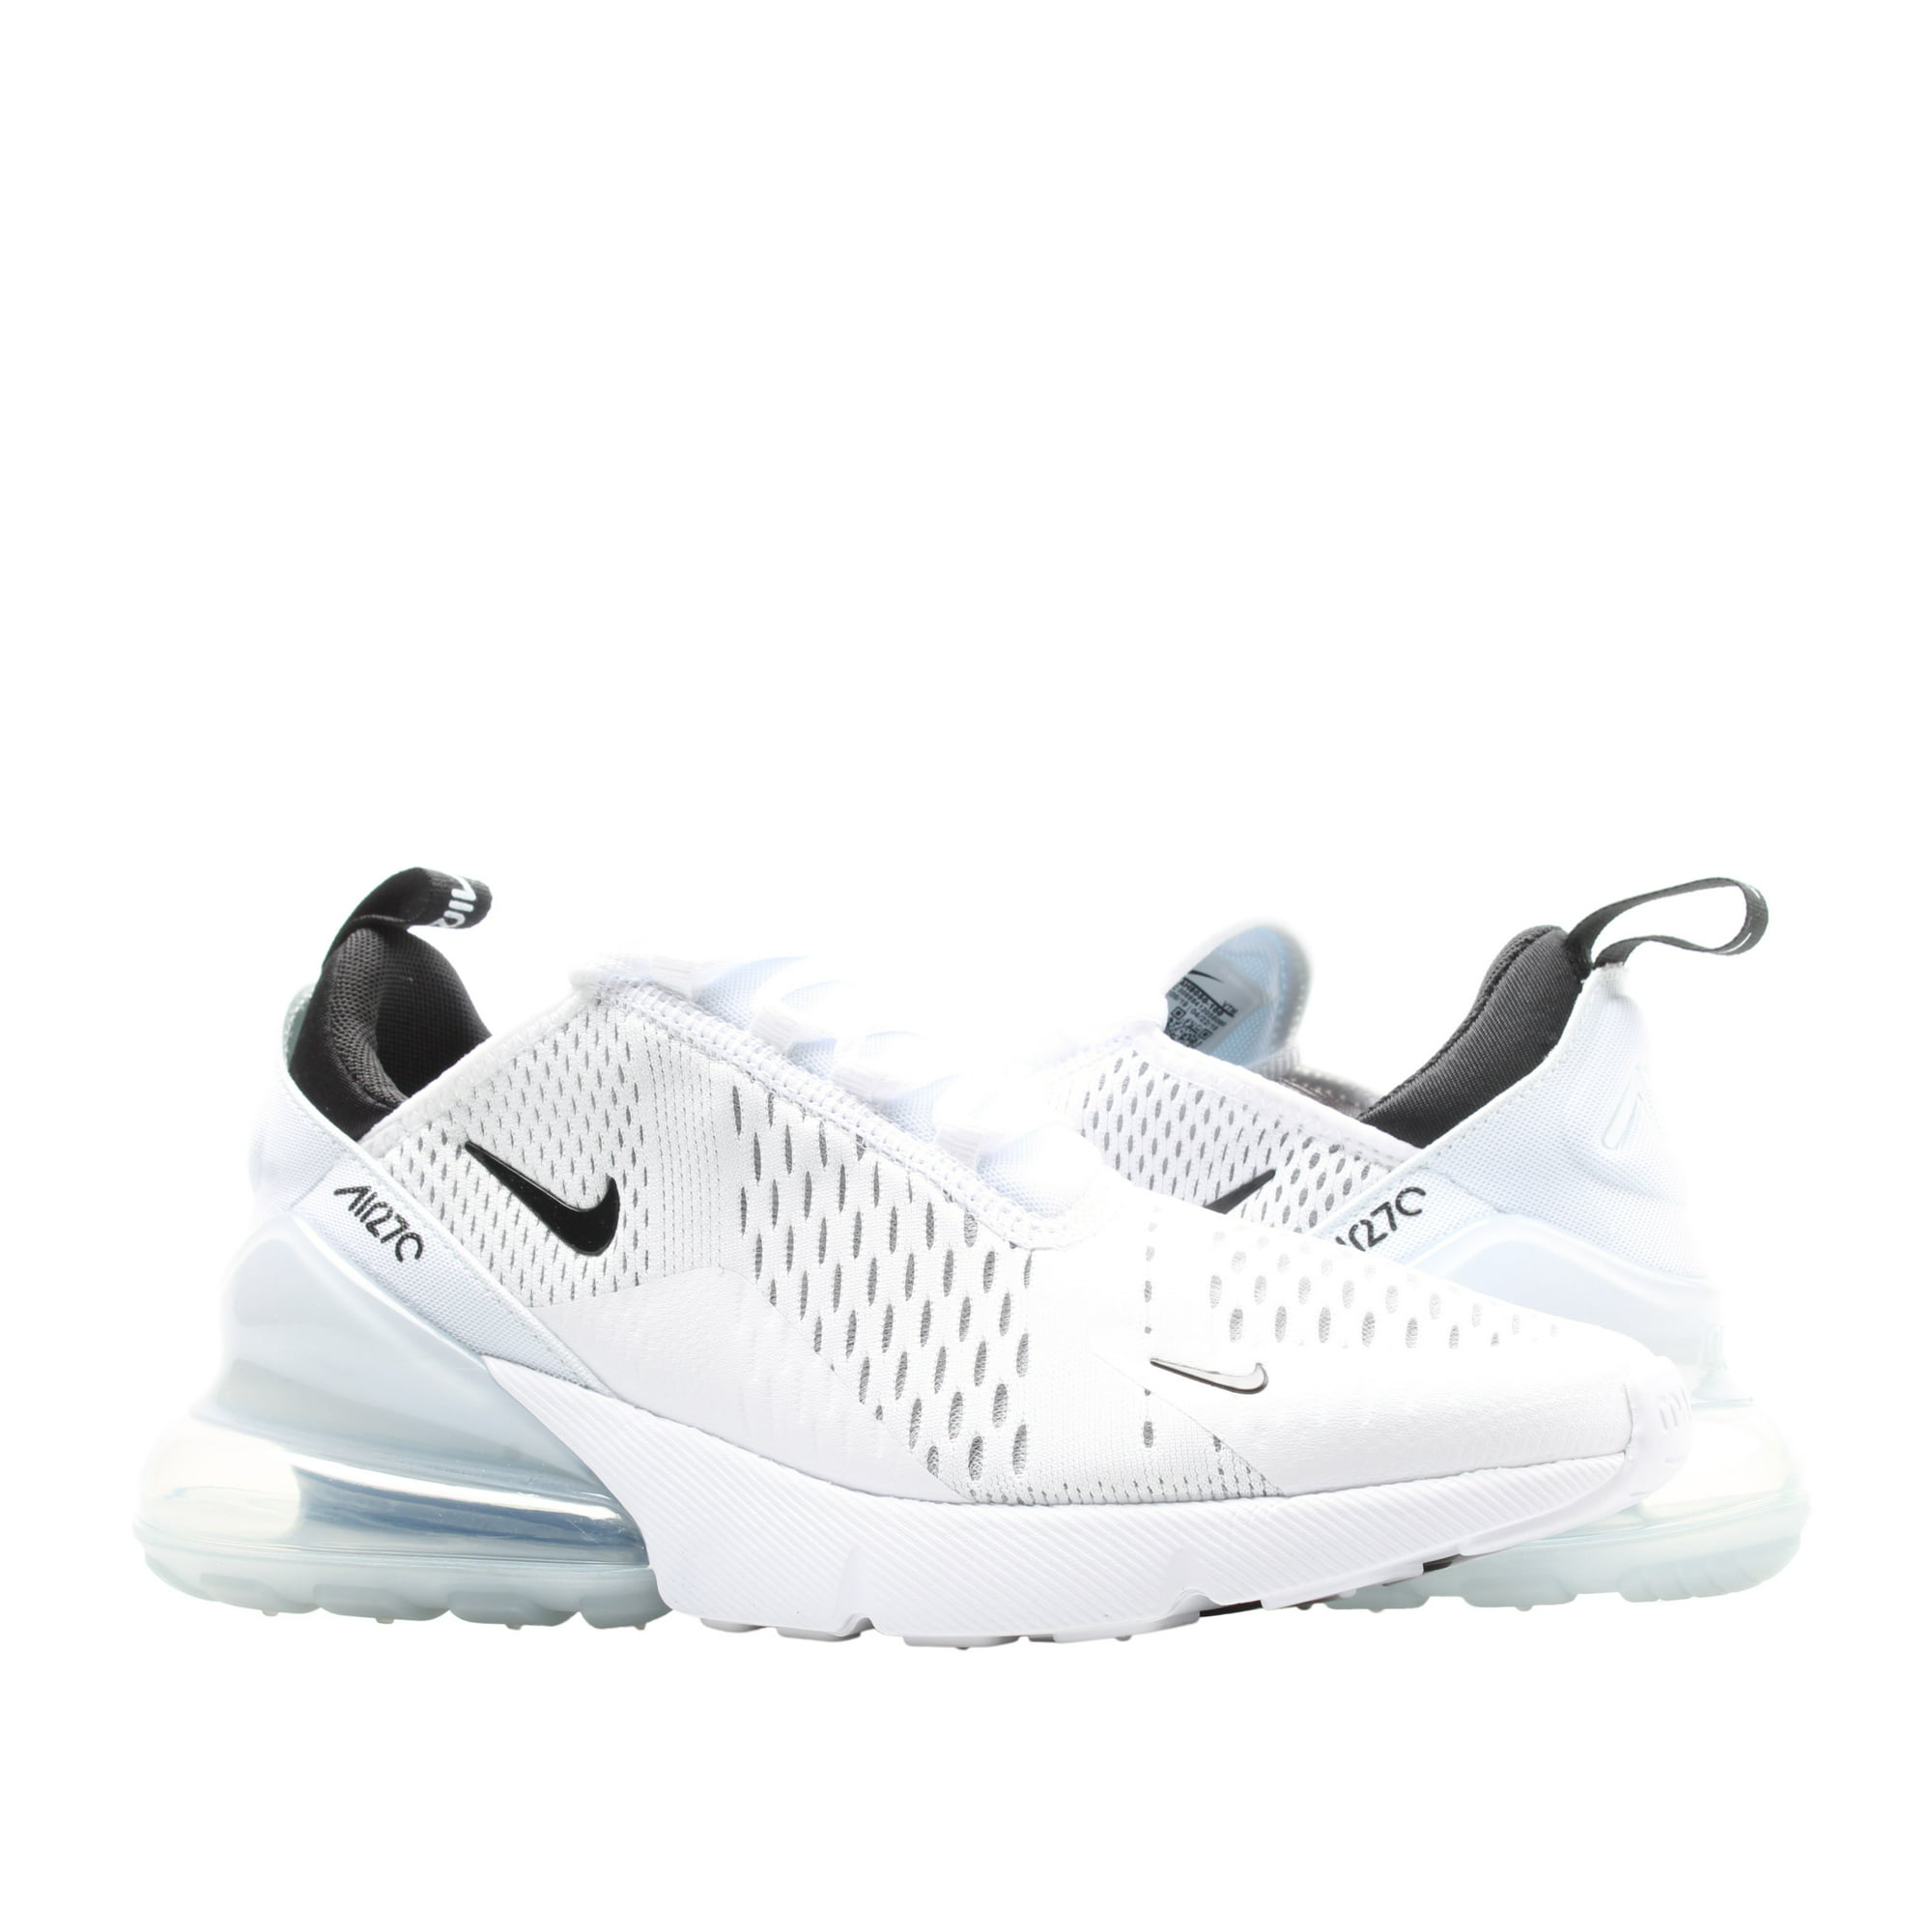 uberørt Assassin Undvigende Nike Air Max 270 Men's Running Shoes White/Black-White AH8050-100 -  Walmart.com